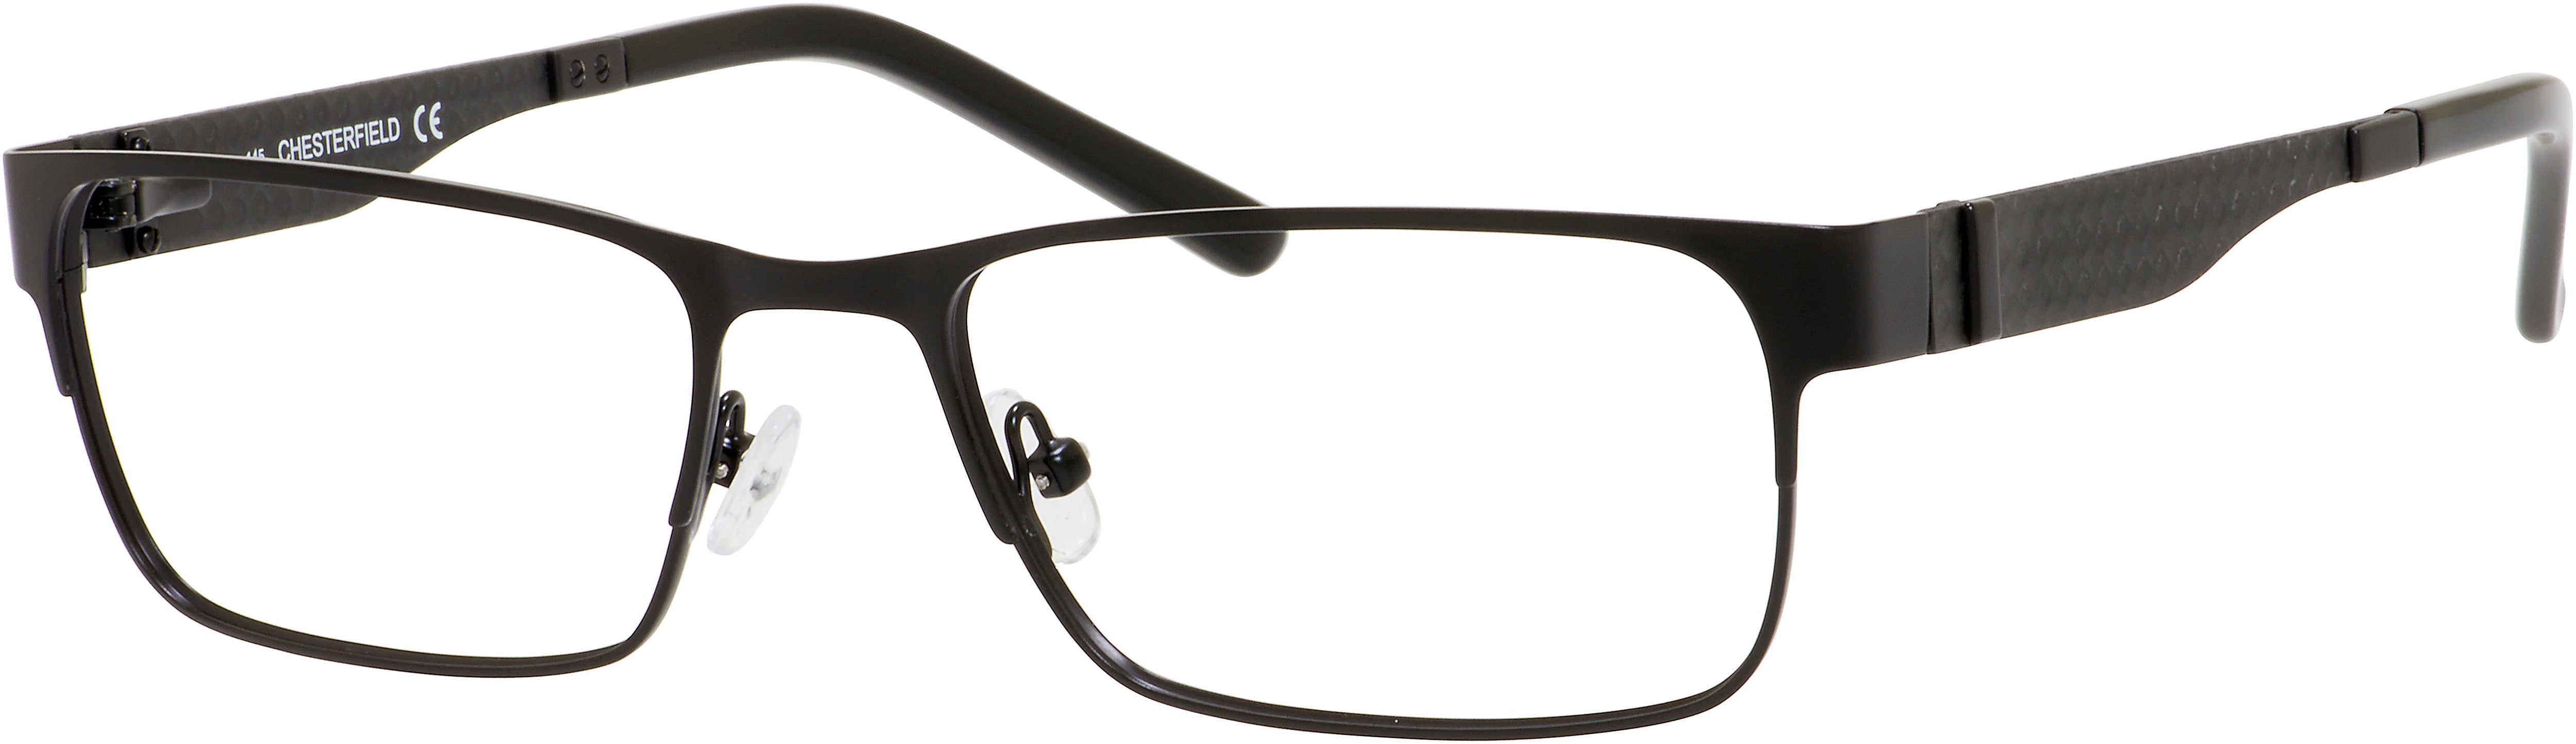  Chesterfield 21 XL Rectangular Eyeglasses 0003-0003  Matte Black (00 Demo Lens)